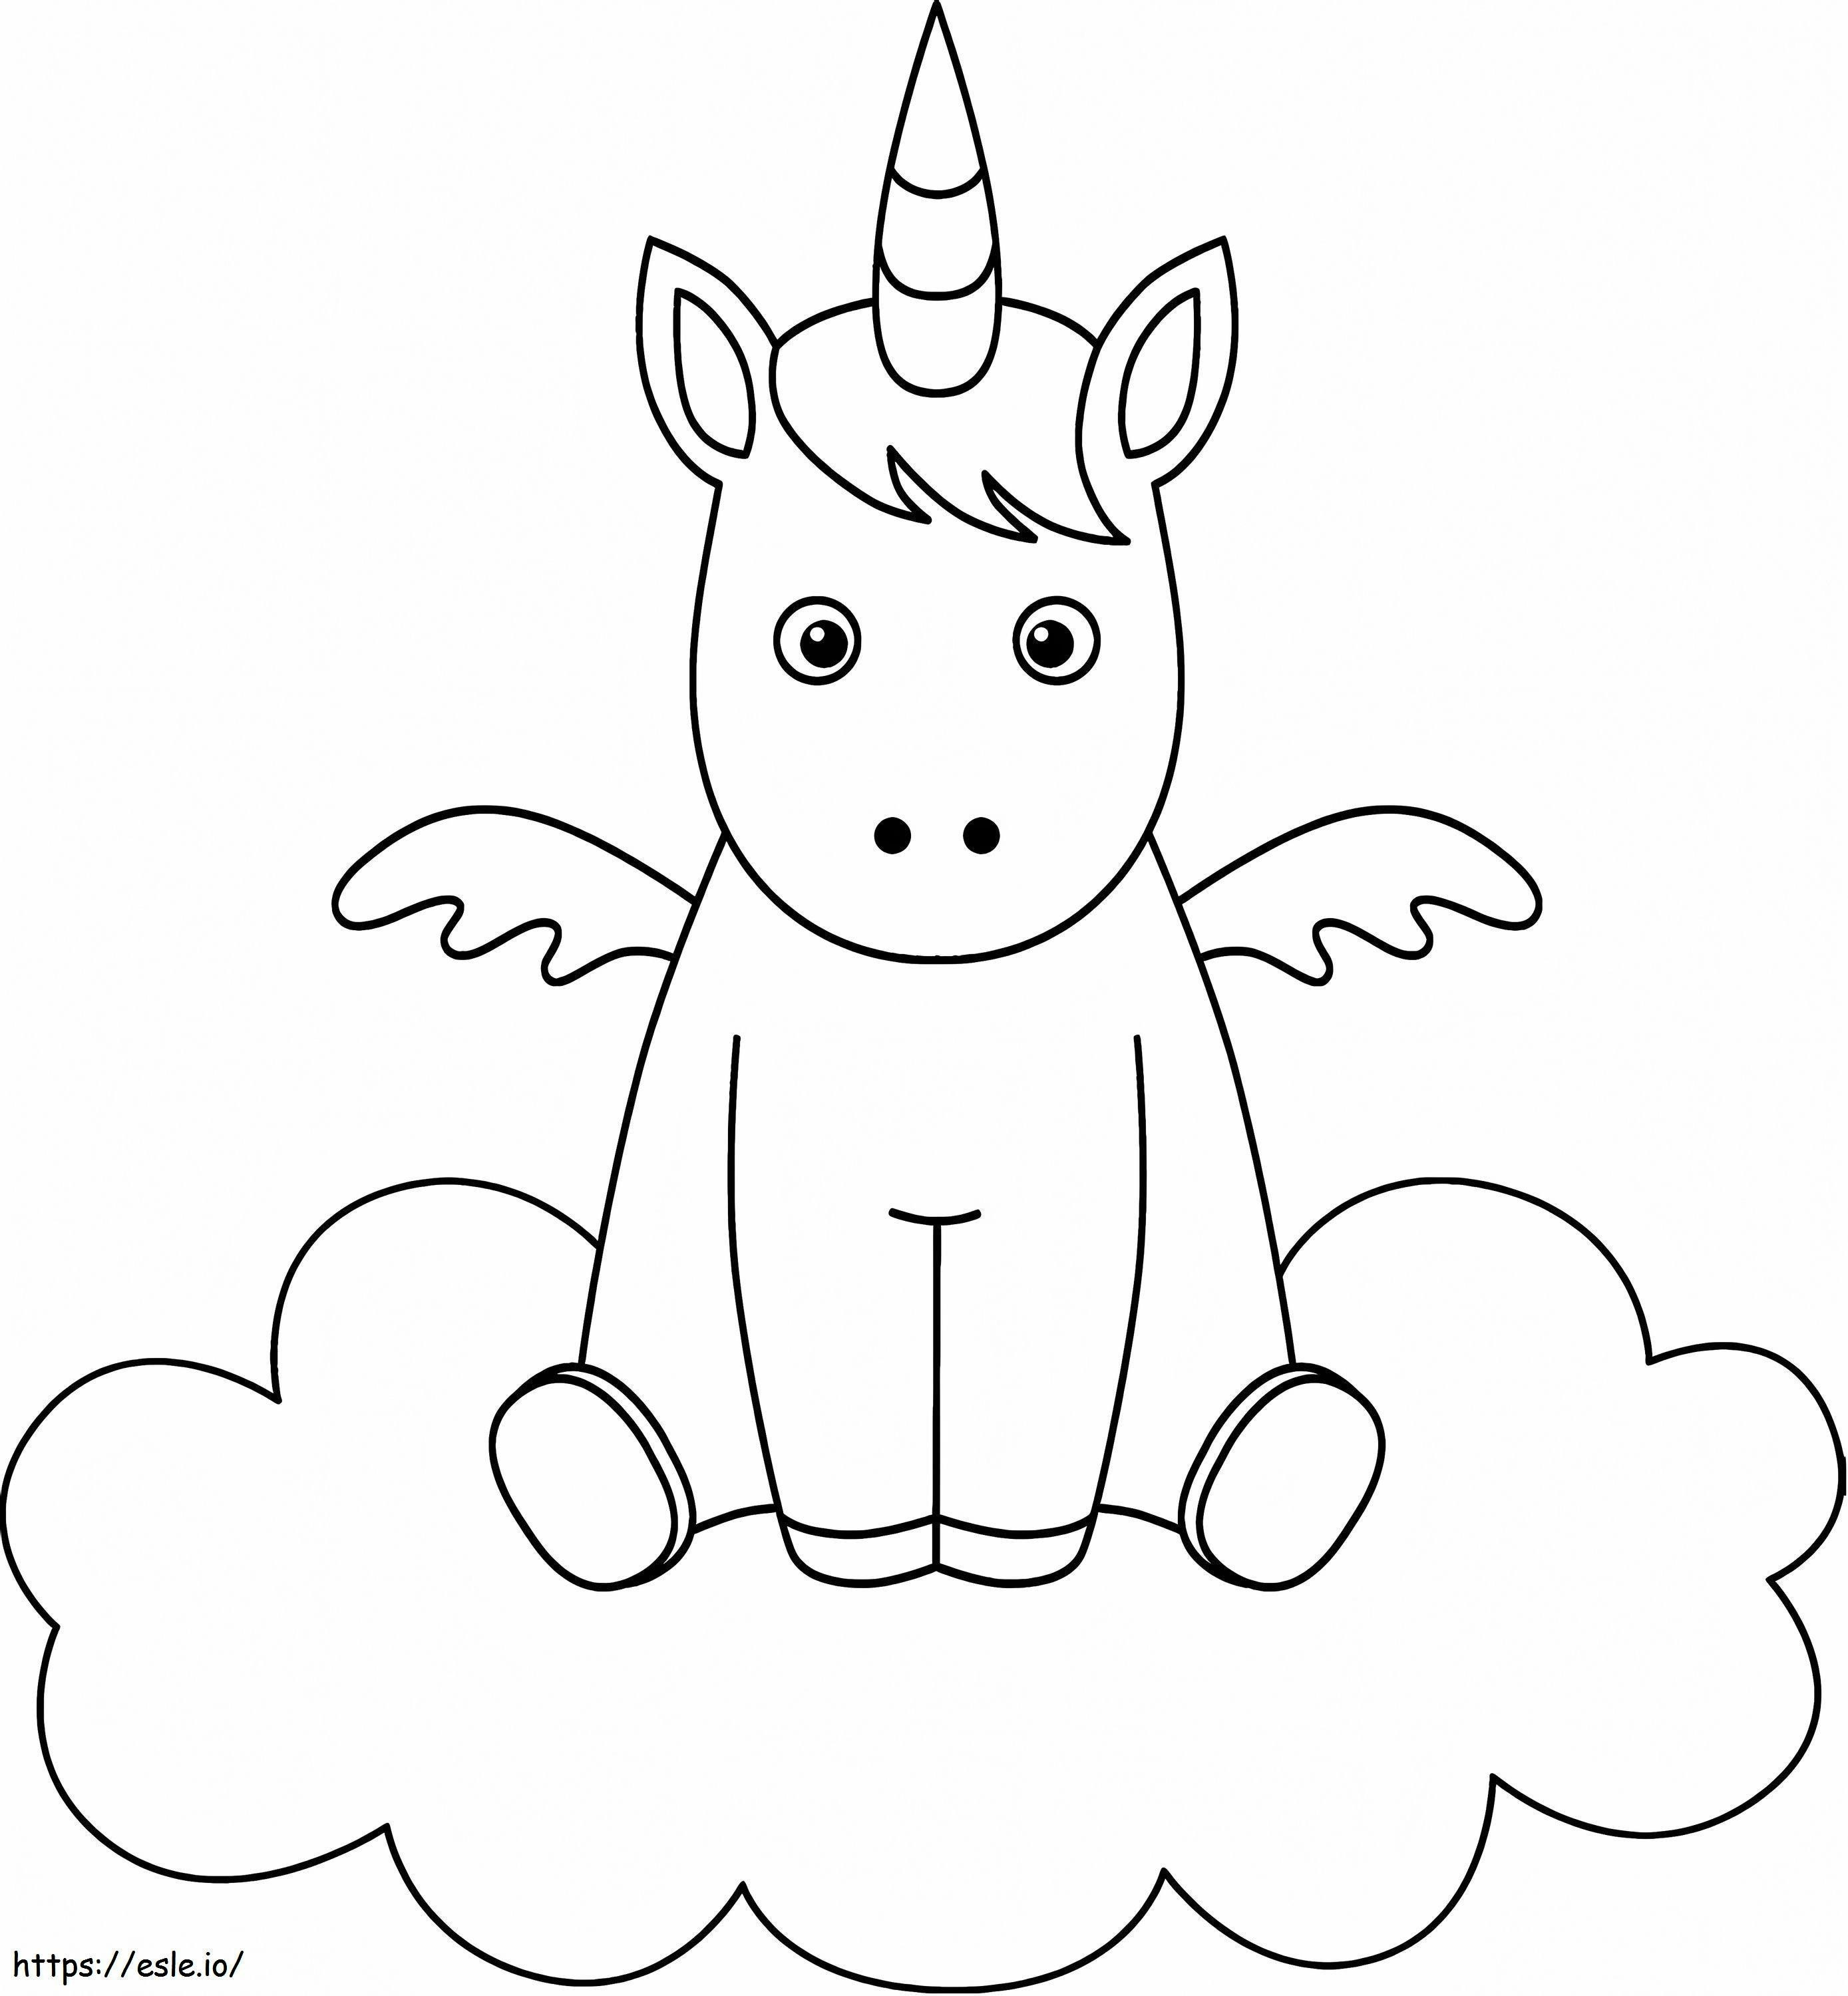 1563325064 Piccolo unicorno su nuvola A4 da colorare